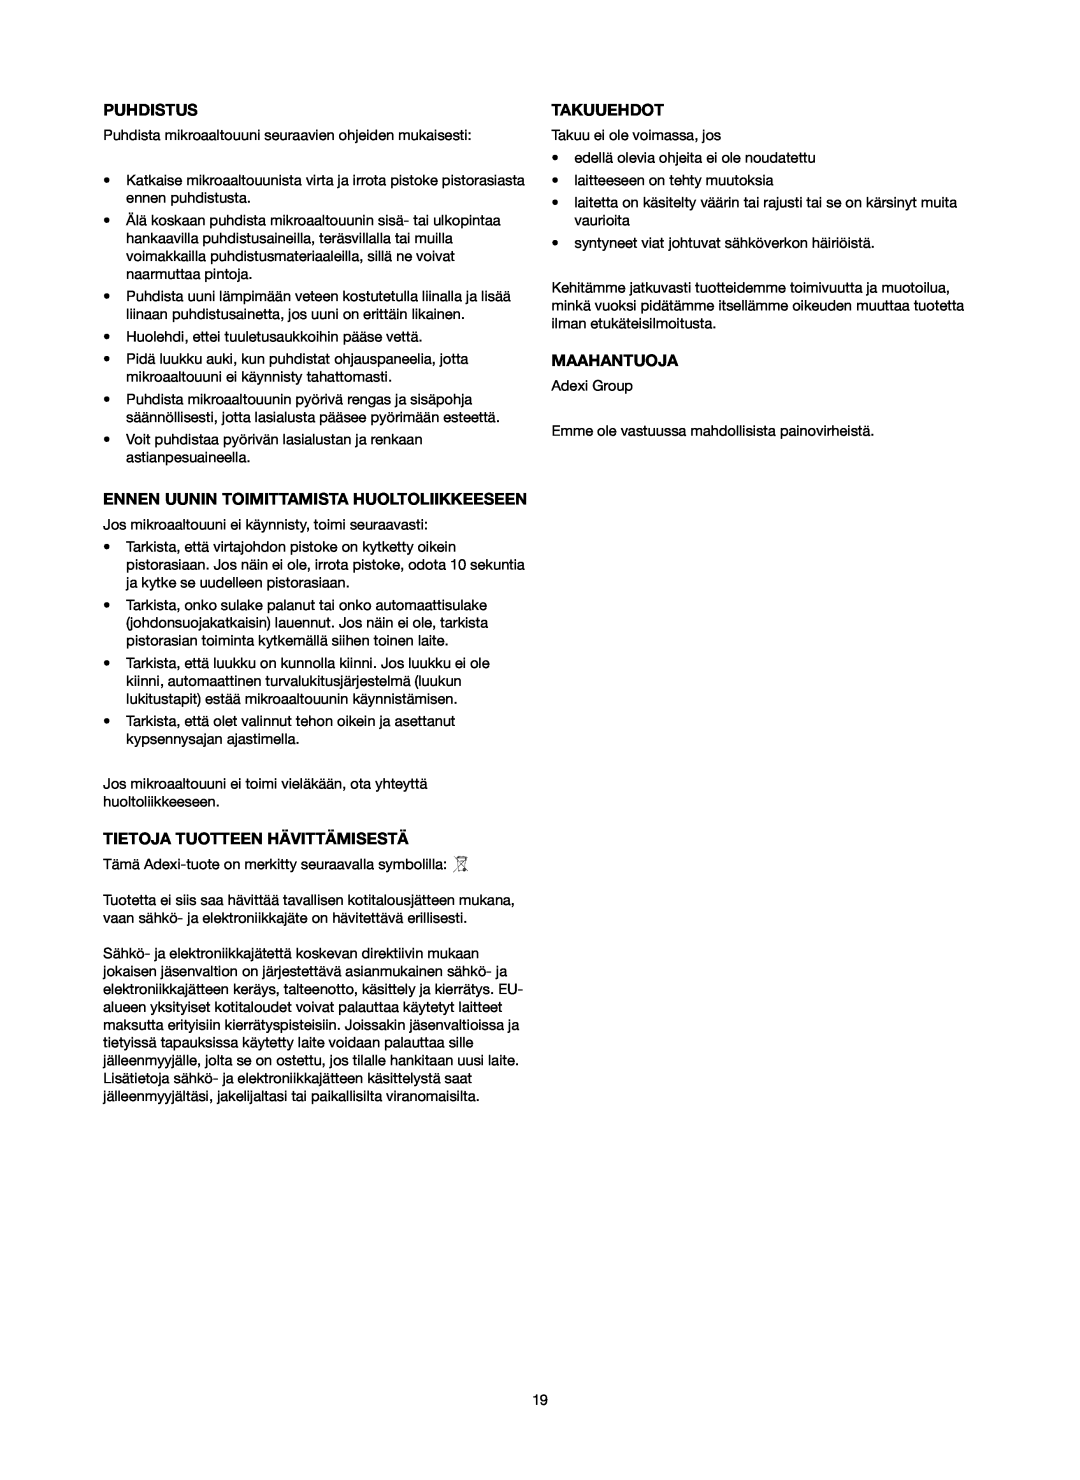 Melissa 753-130 manual Puhdistus, Ennen Uunin Toimittamista Huoltoliikkeeseen, Tietoja Tuotteen Hävittämisestä, Takuuehdot 